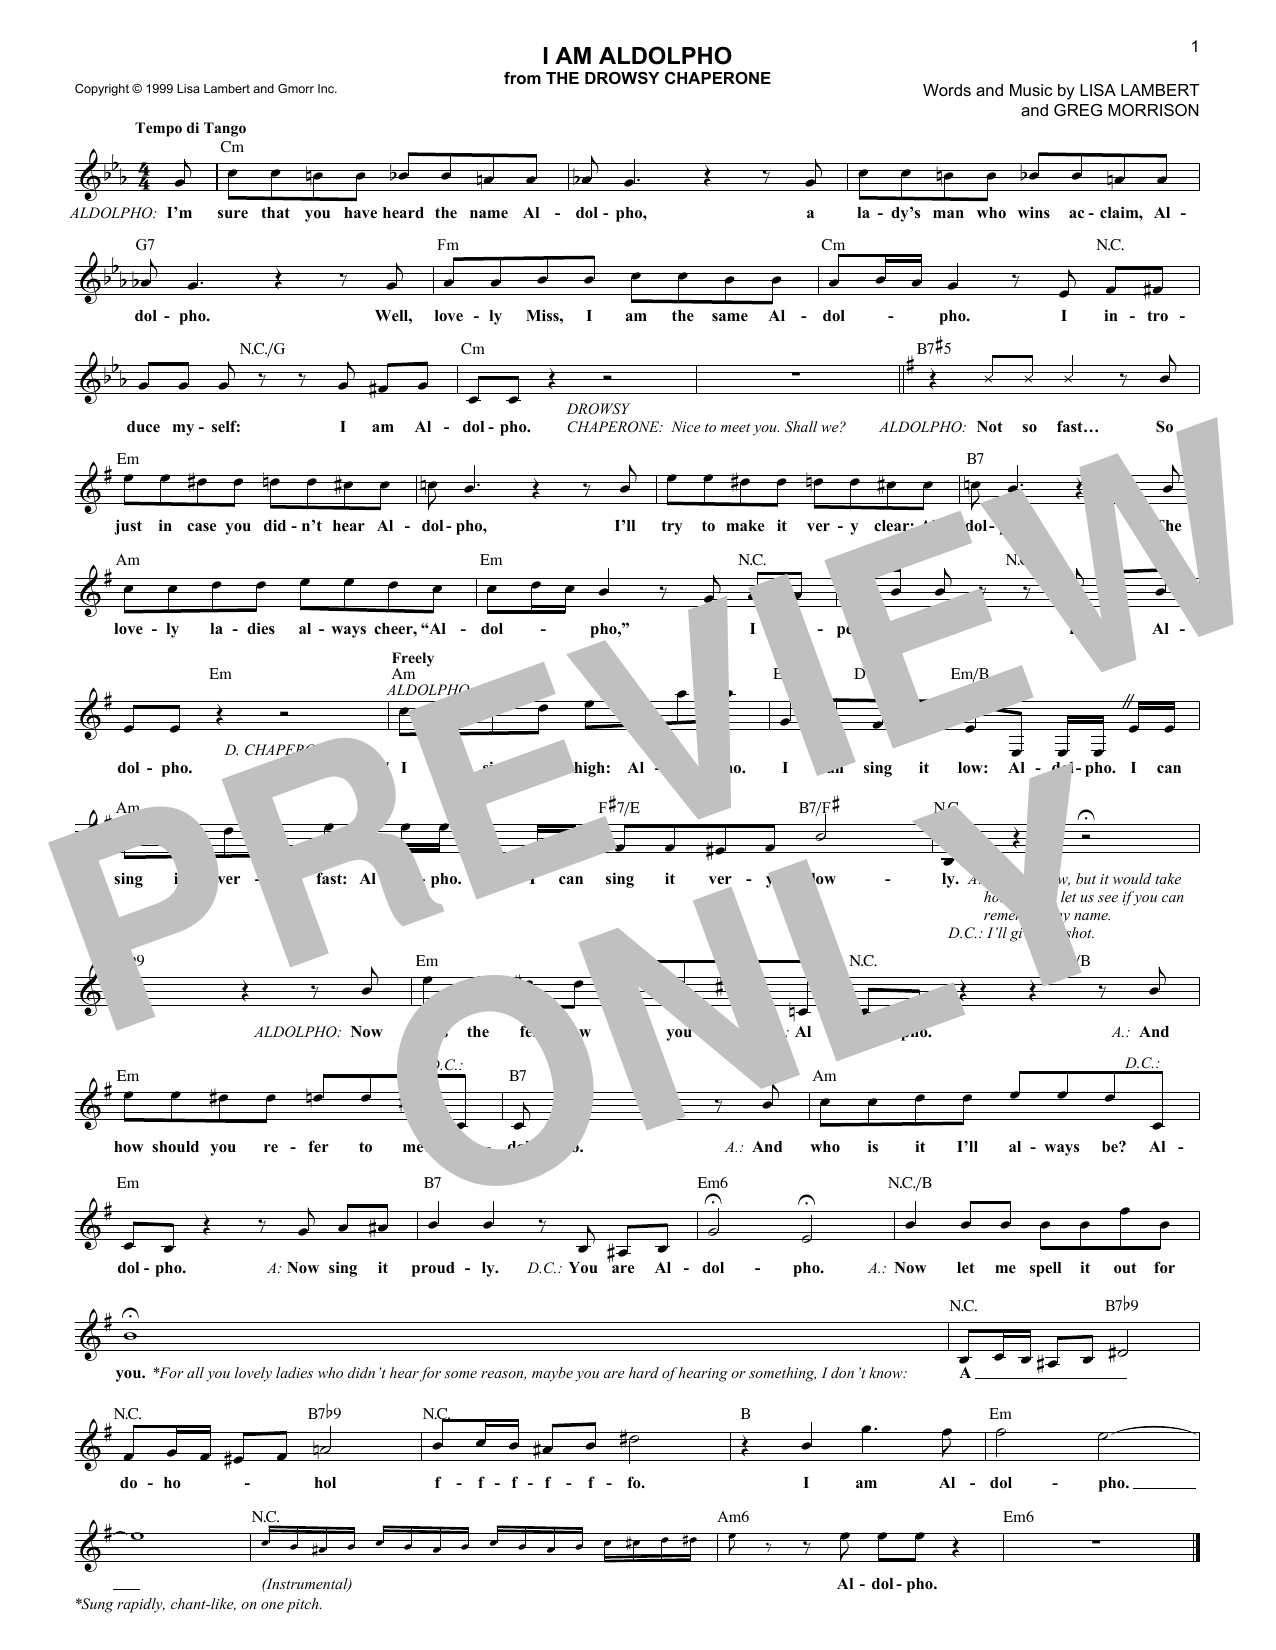 Greg Morrison I Am Aldolpho Sheet Music Notes & Chords for Melody Line, Lyrics & Chords - Download or Print PDF